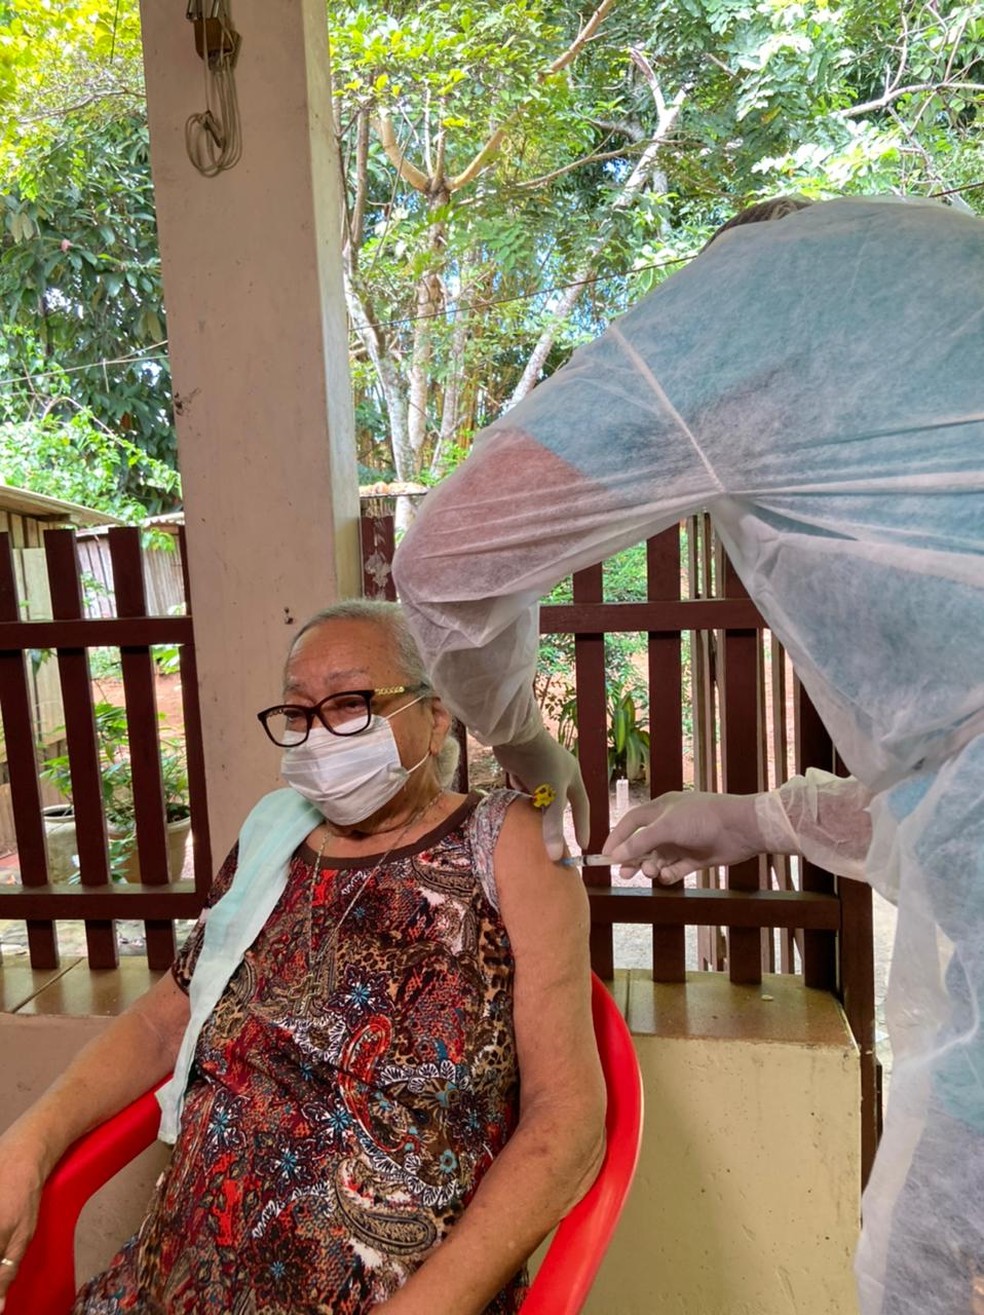 Garrilda Amorin recebeu primeira dose da vacina — Foto: Tálita Sabrina/Rede Amazônica Acre